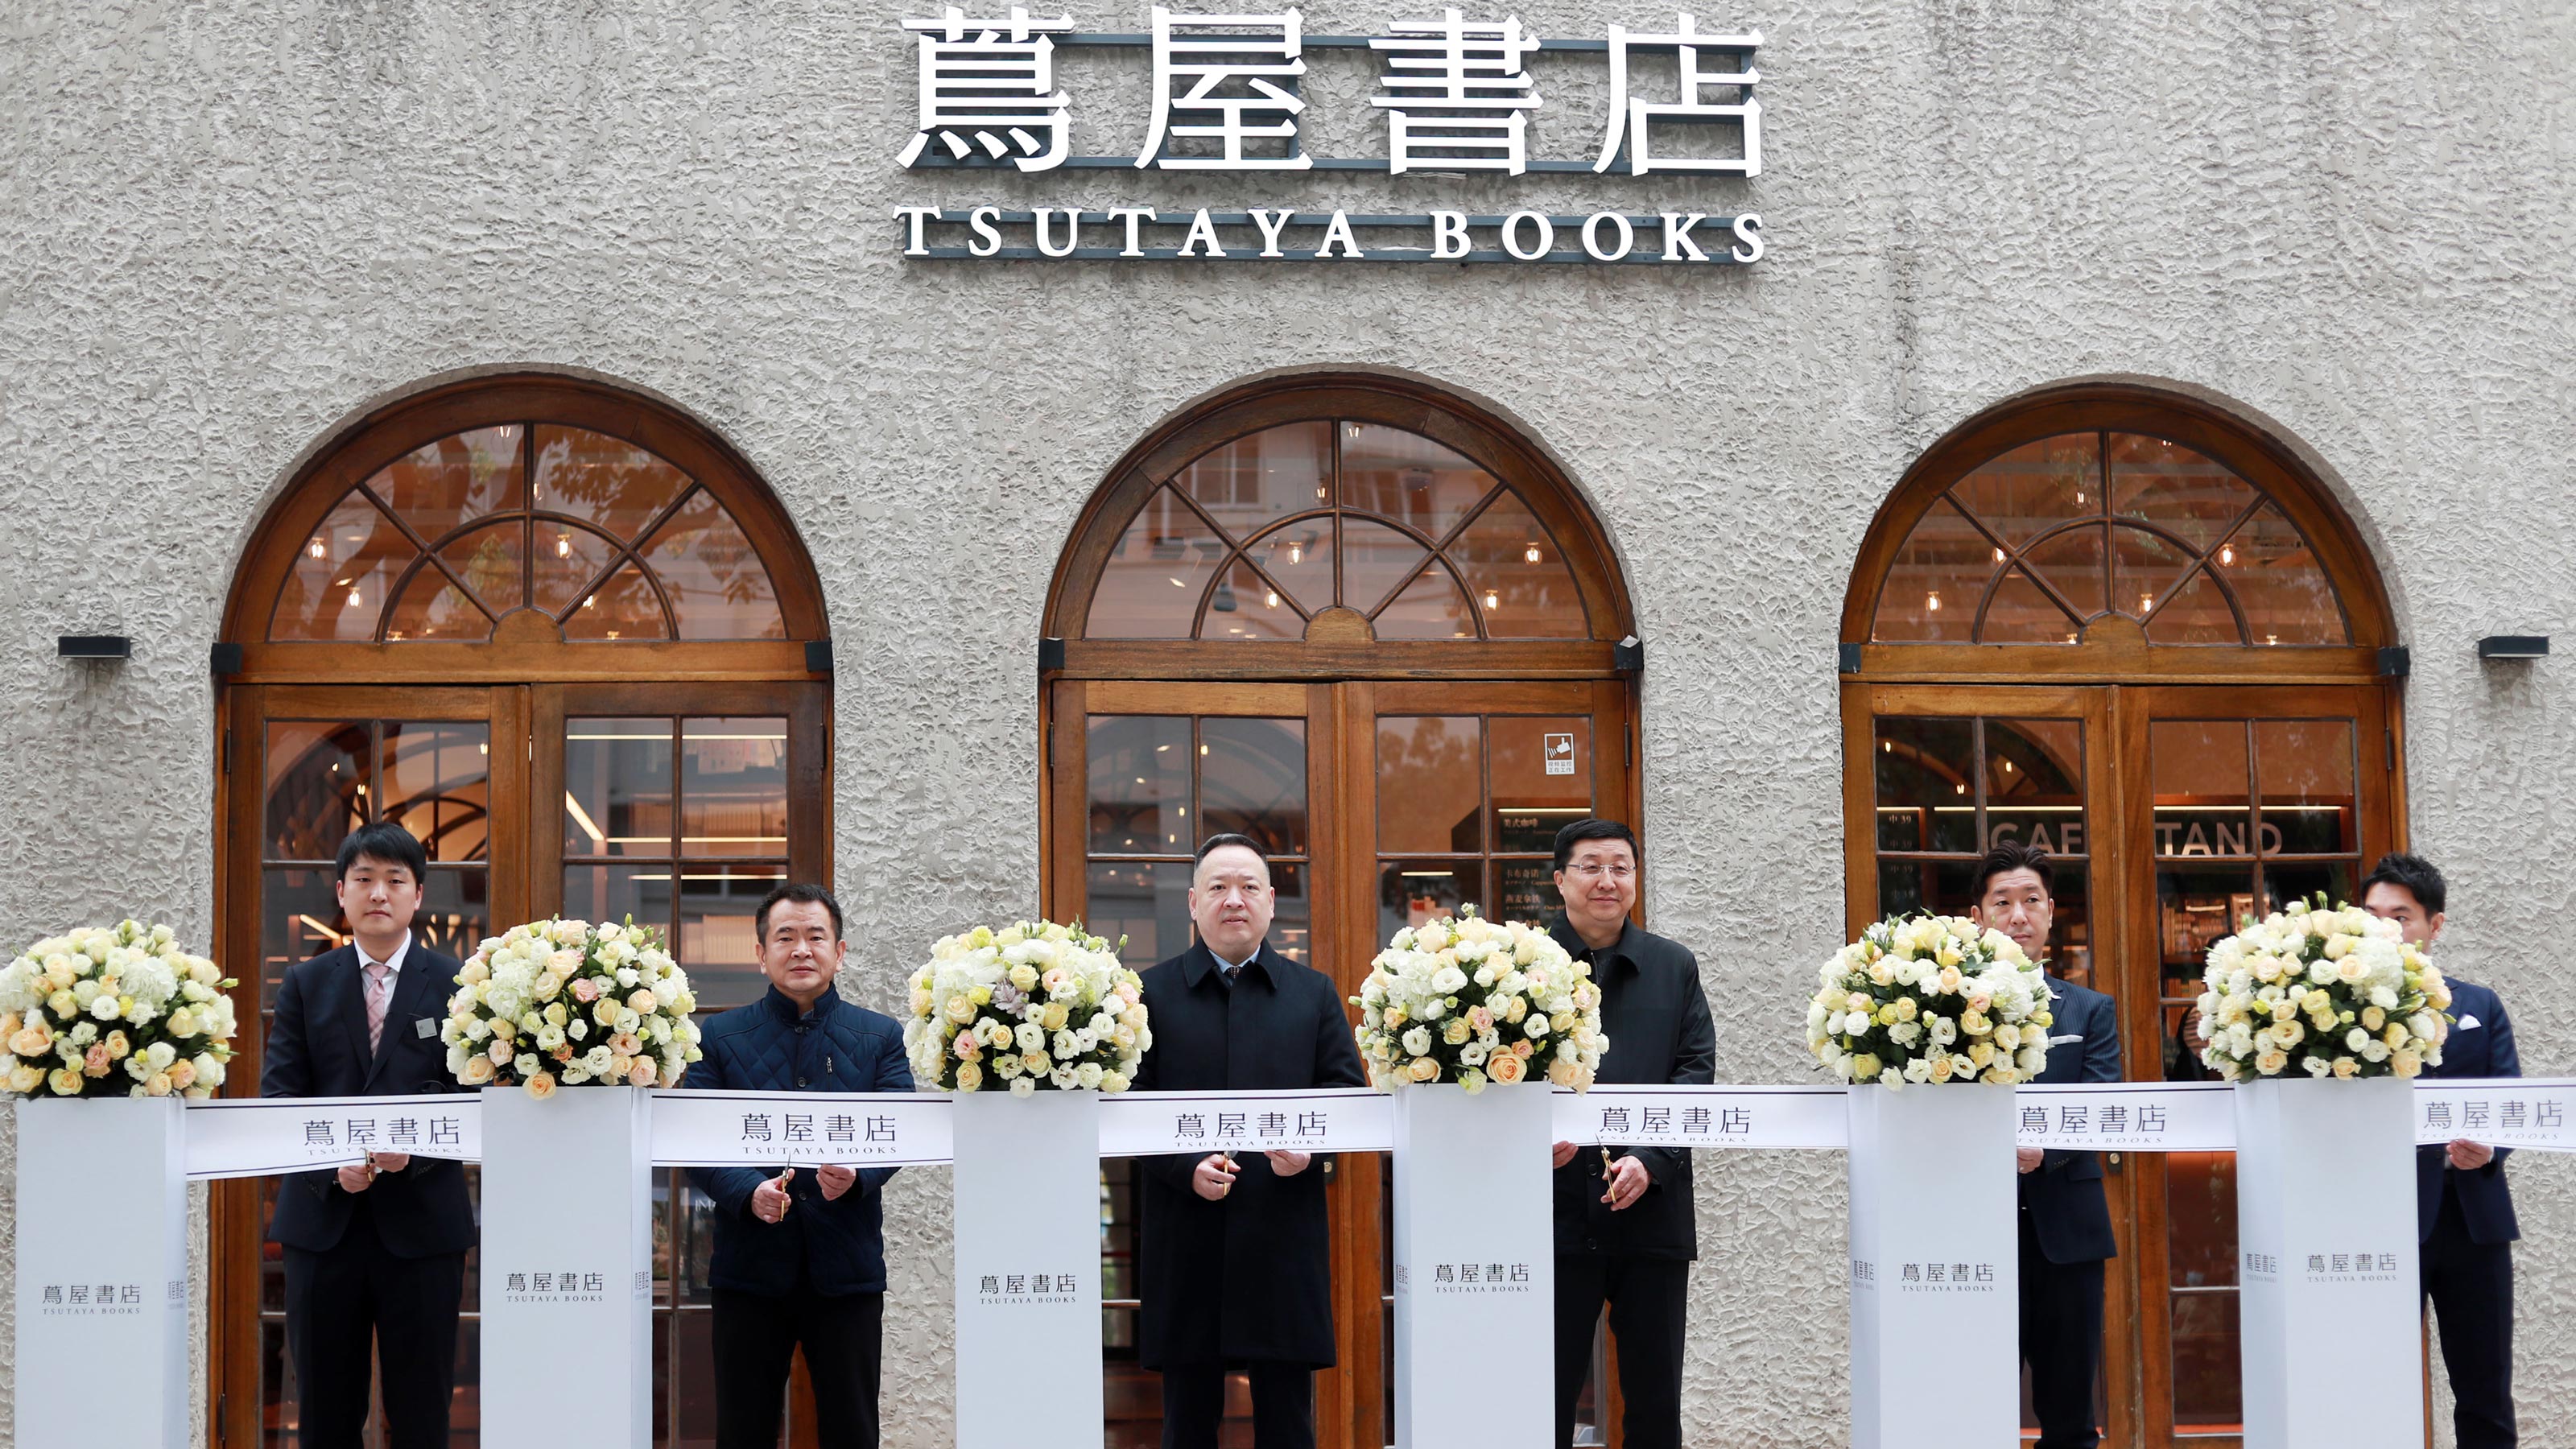 上海の蔦屋書店やロフトが大人気 中国人の間に広がる深刻な 日本ロス 日本への憧れを募らせる2つの背景 President Online プレジデントオンライン